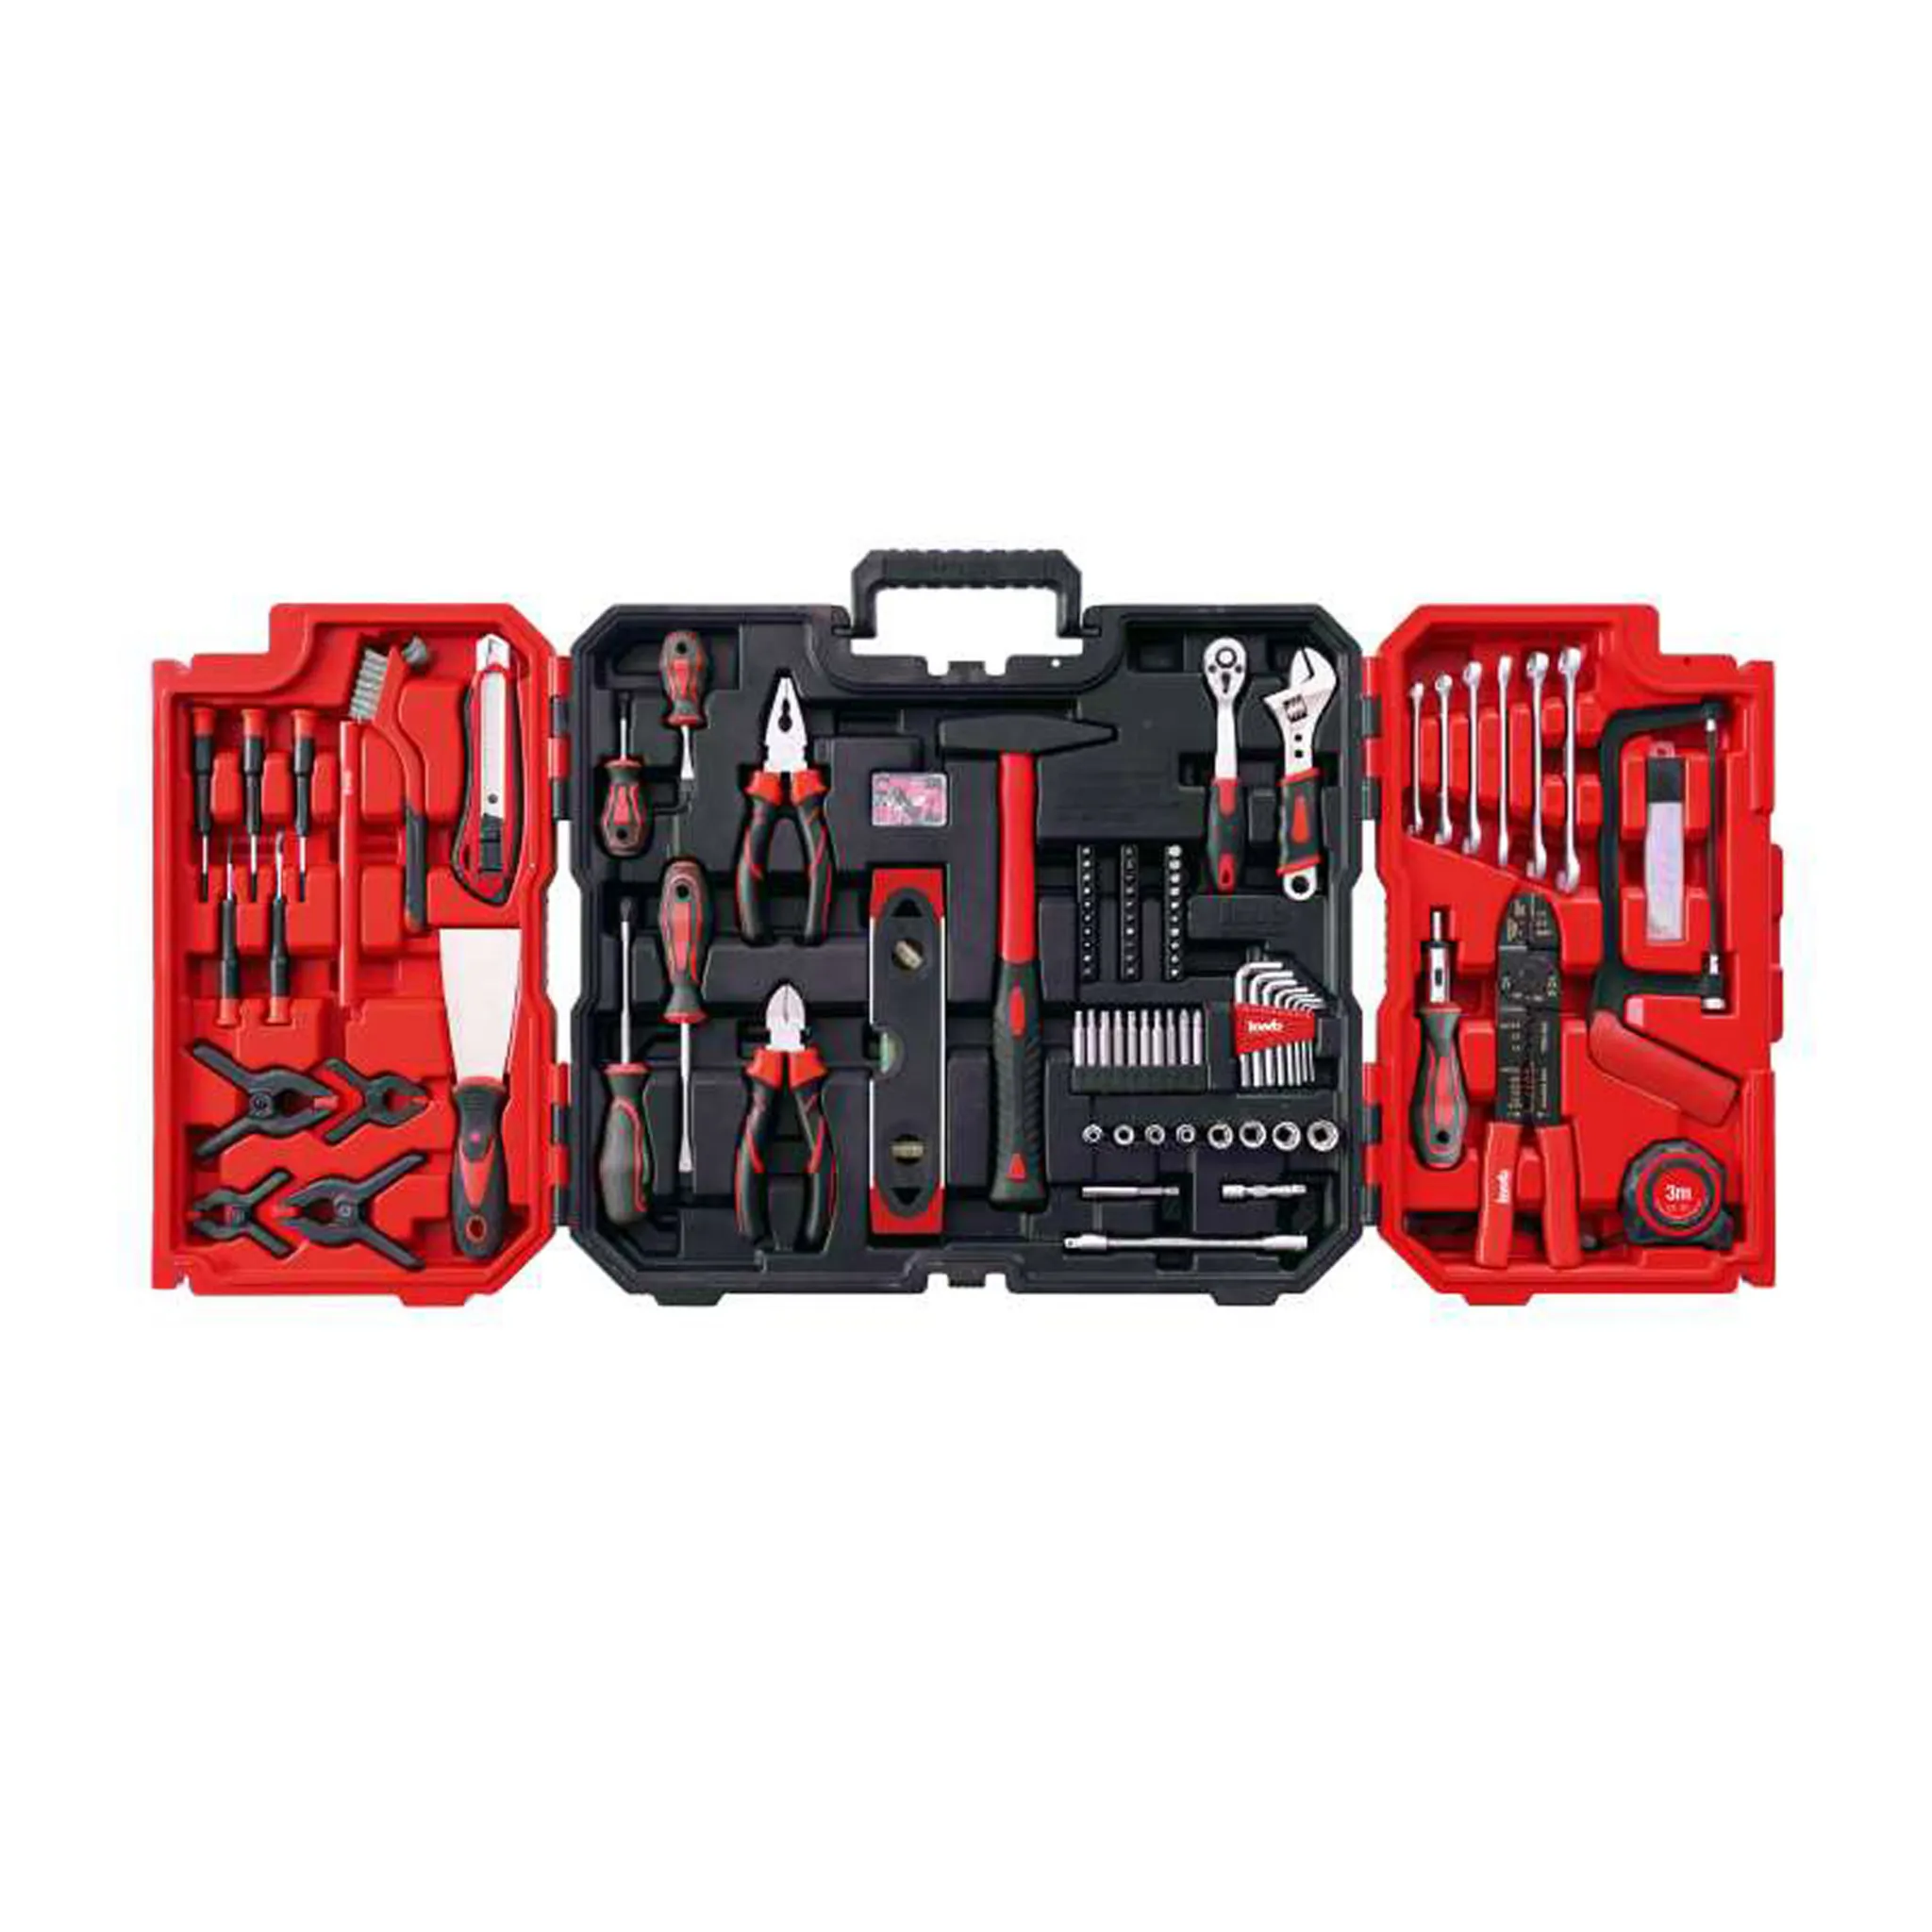 125 Werkzeug-Set, inkl. kwb Werkzeug-Koffer